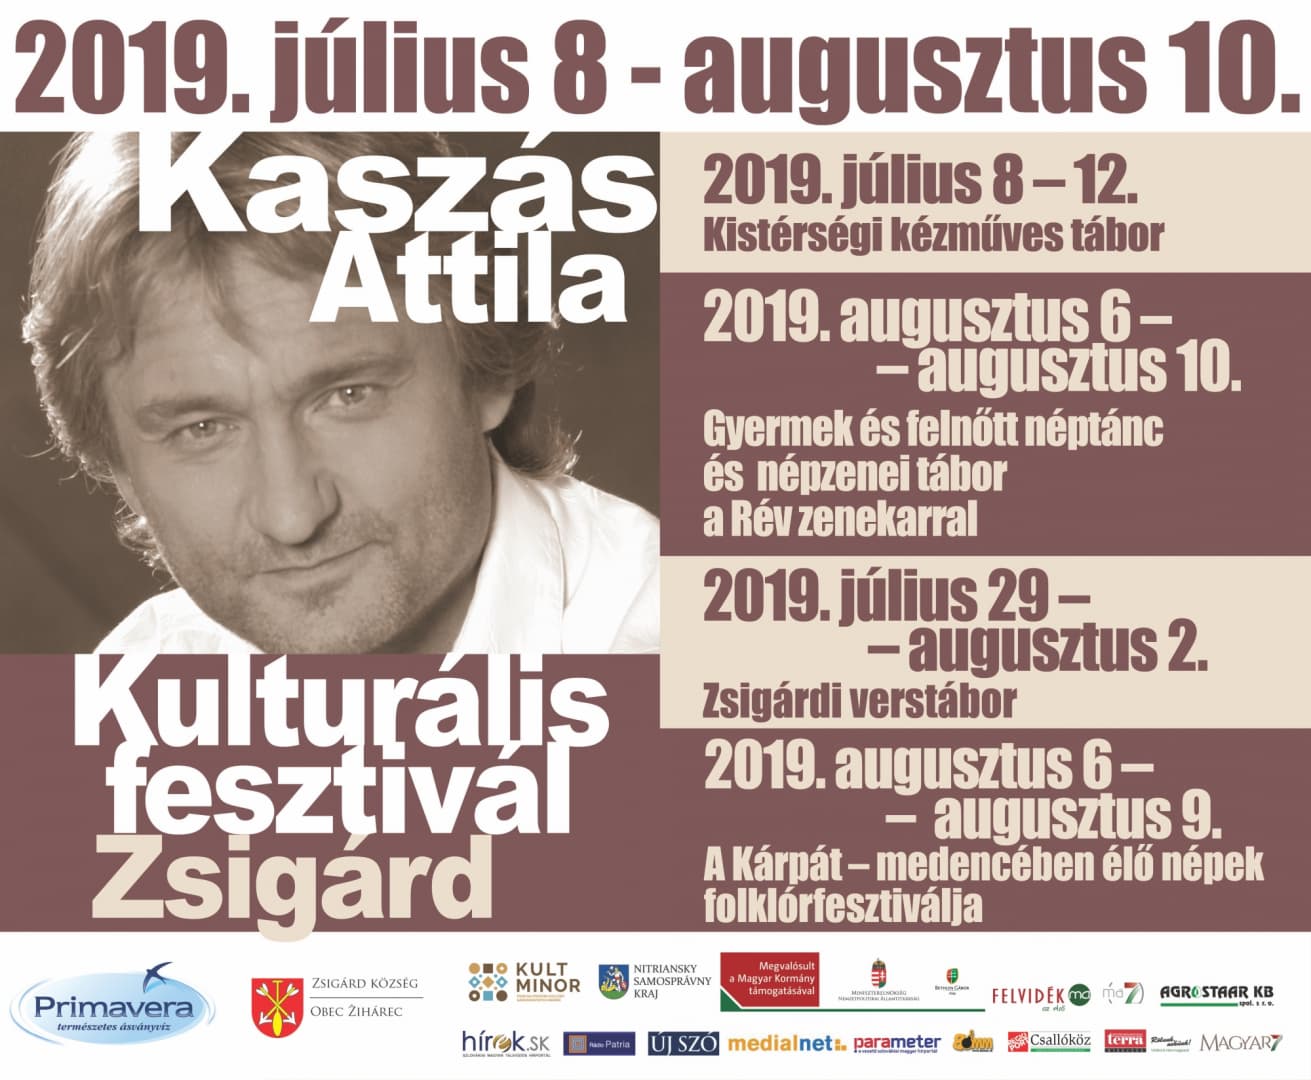 Kaszás Attila Kulturális Fesztivál 2019